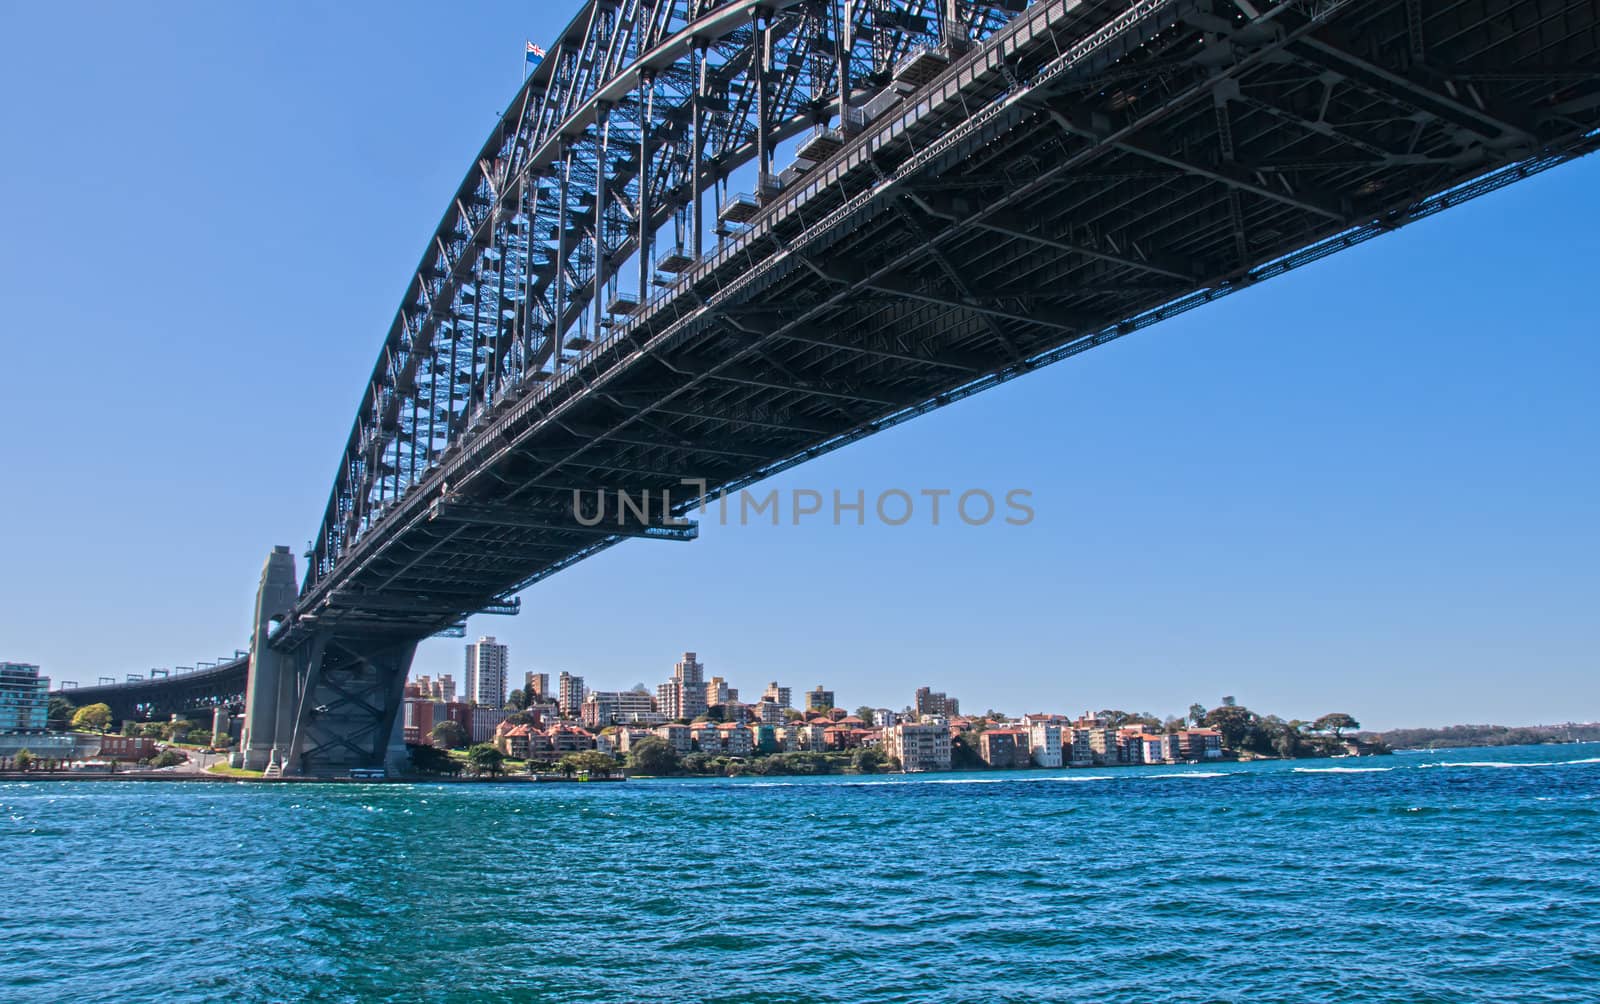 Sydney Harbour and the Sydney Harbour Bridge